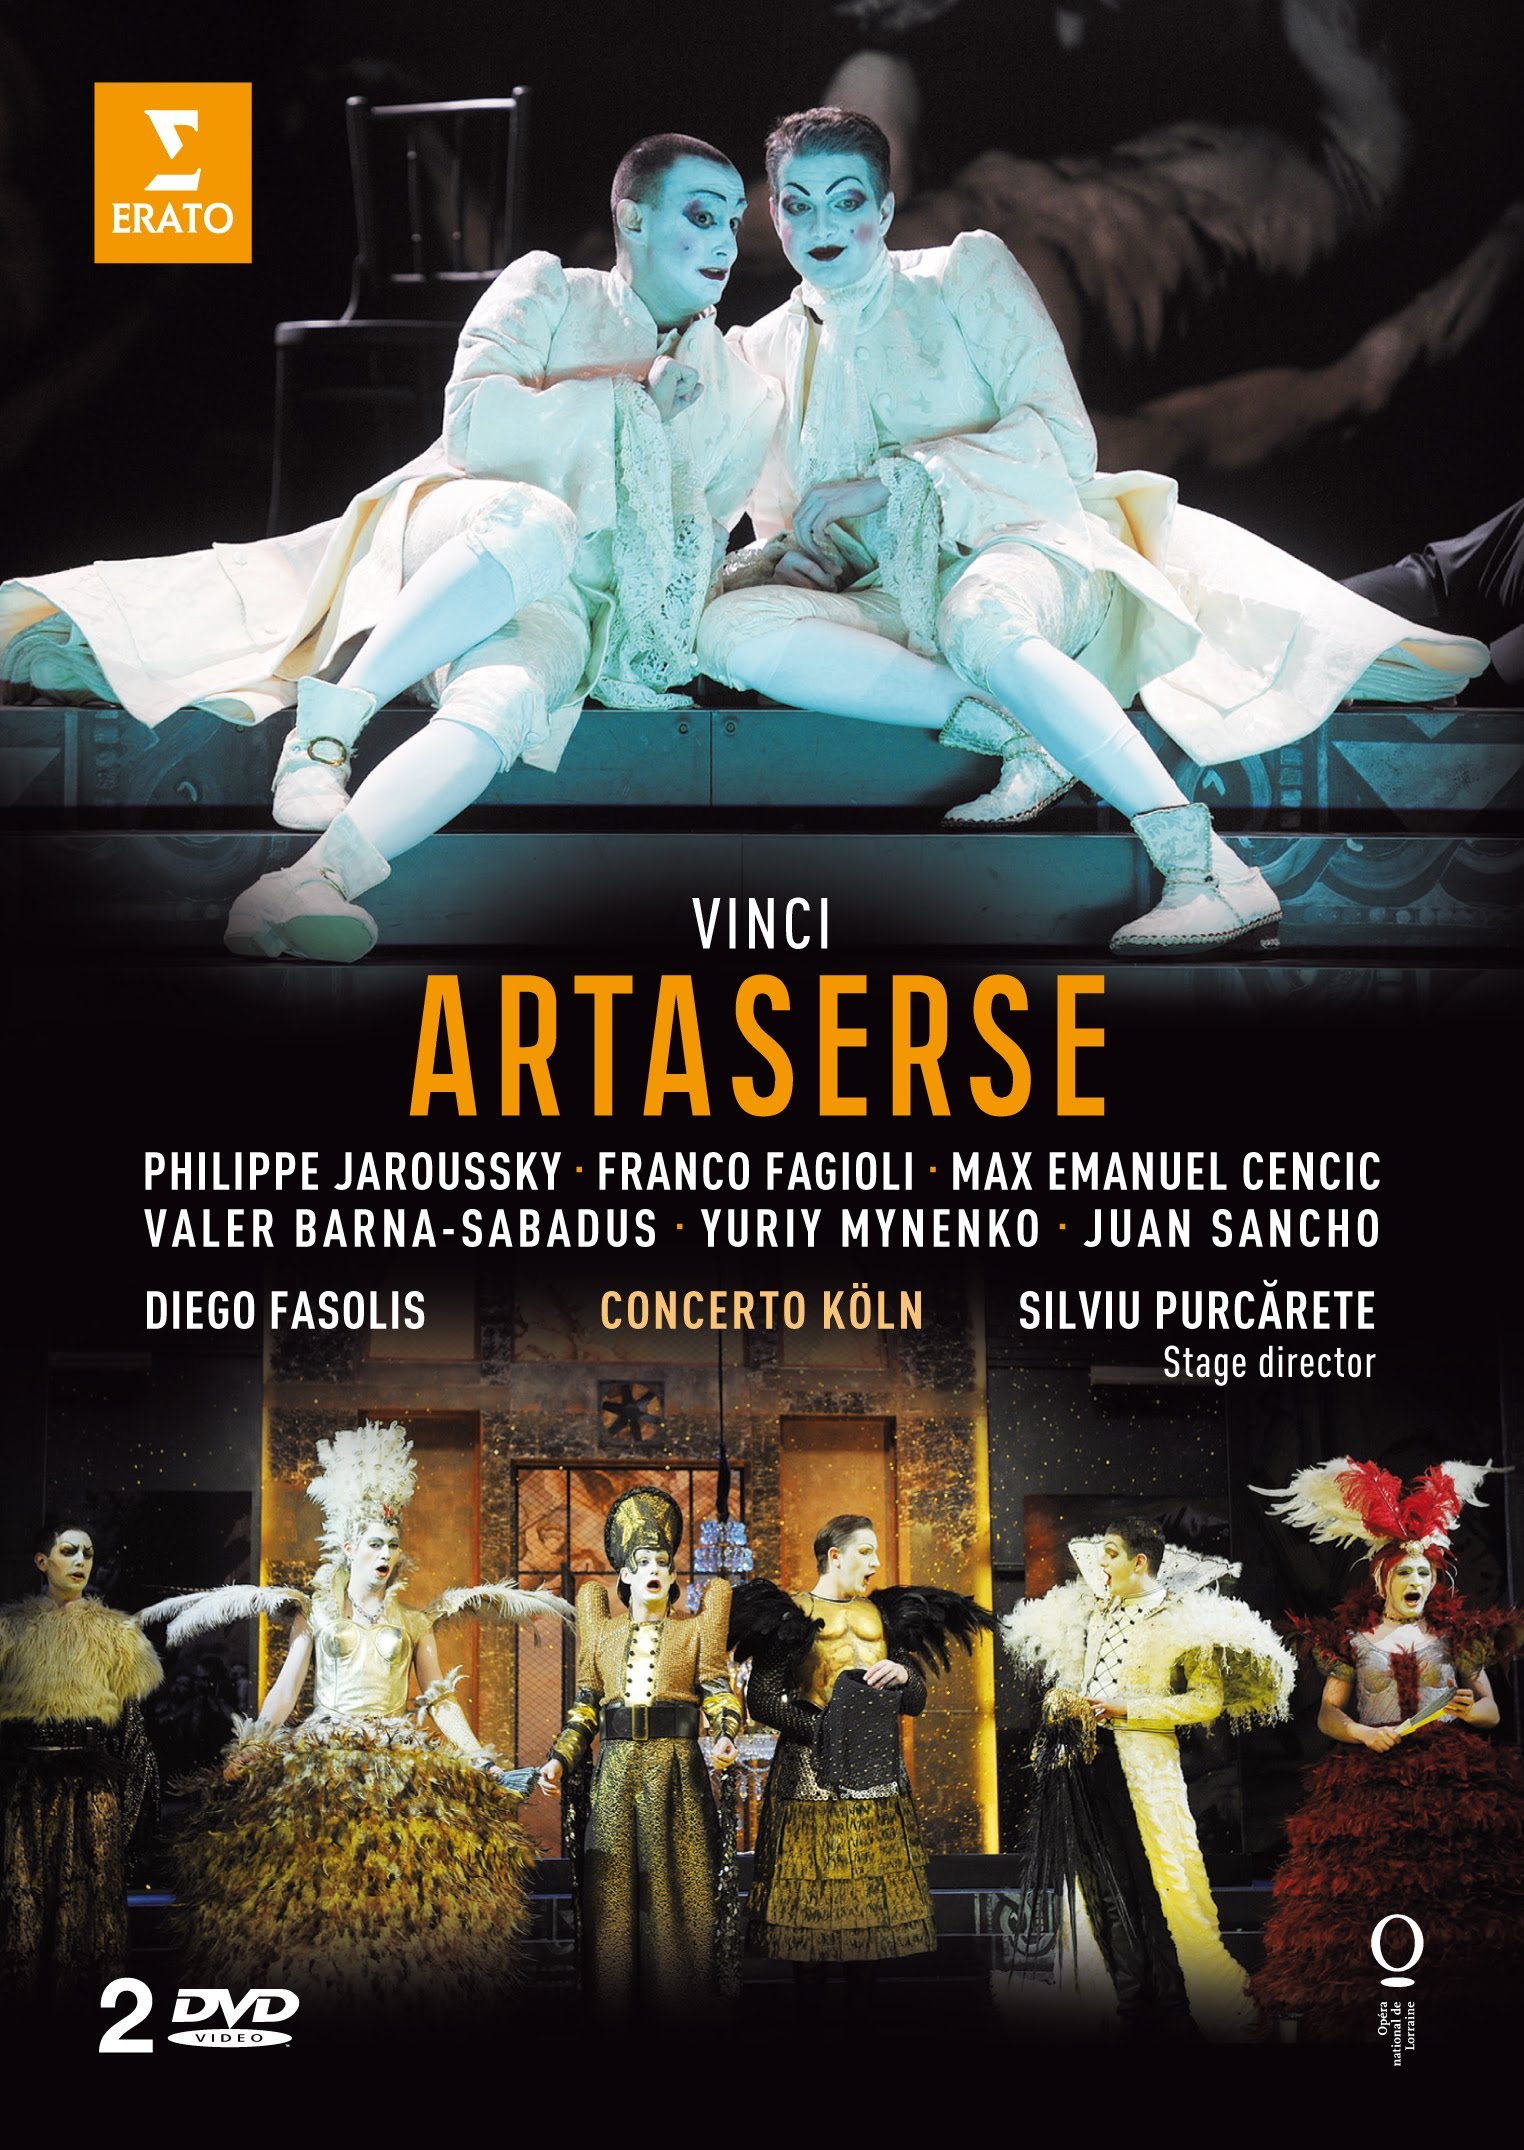 2DVD Vinci - Artaserse - Philippe Jaroussky, Franco Fagioli